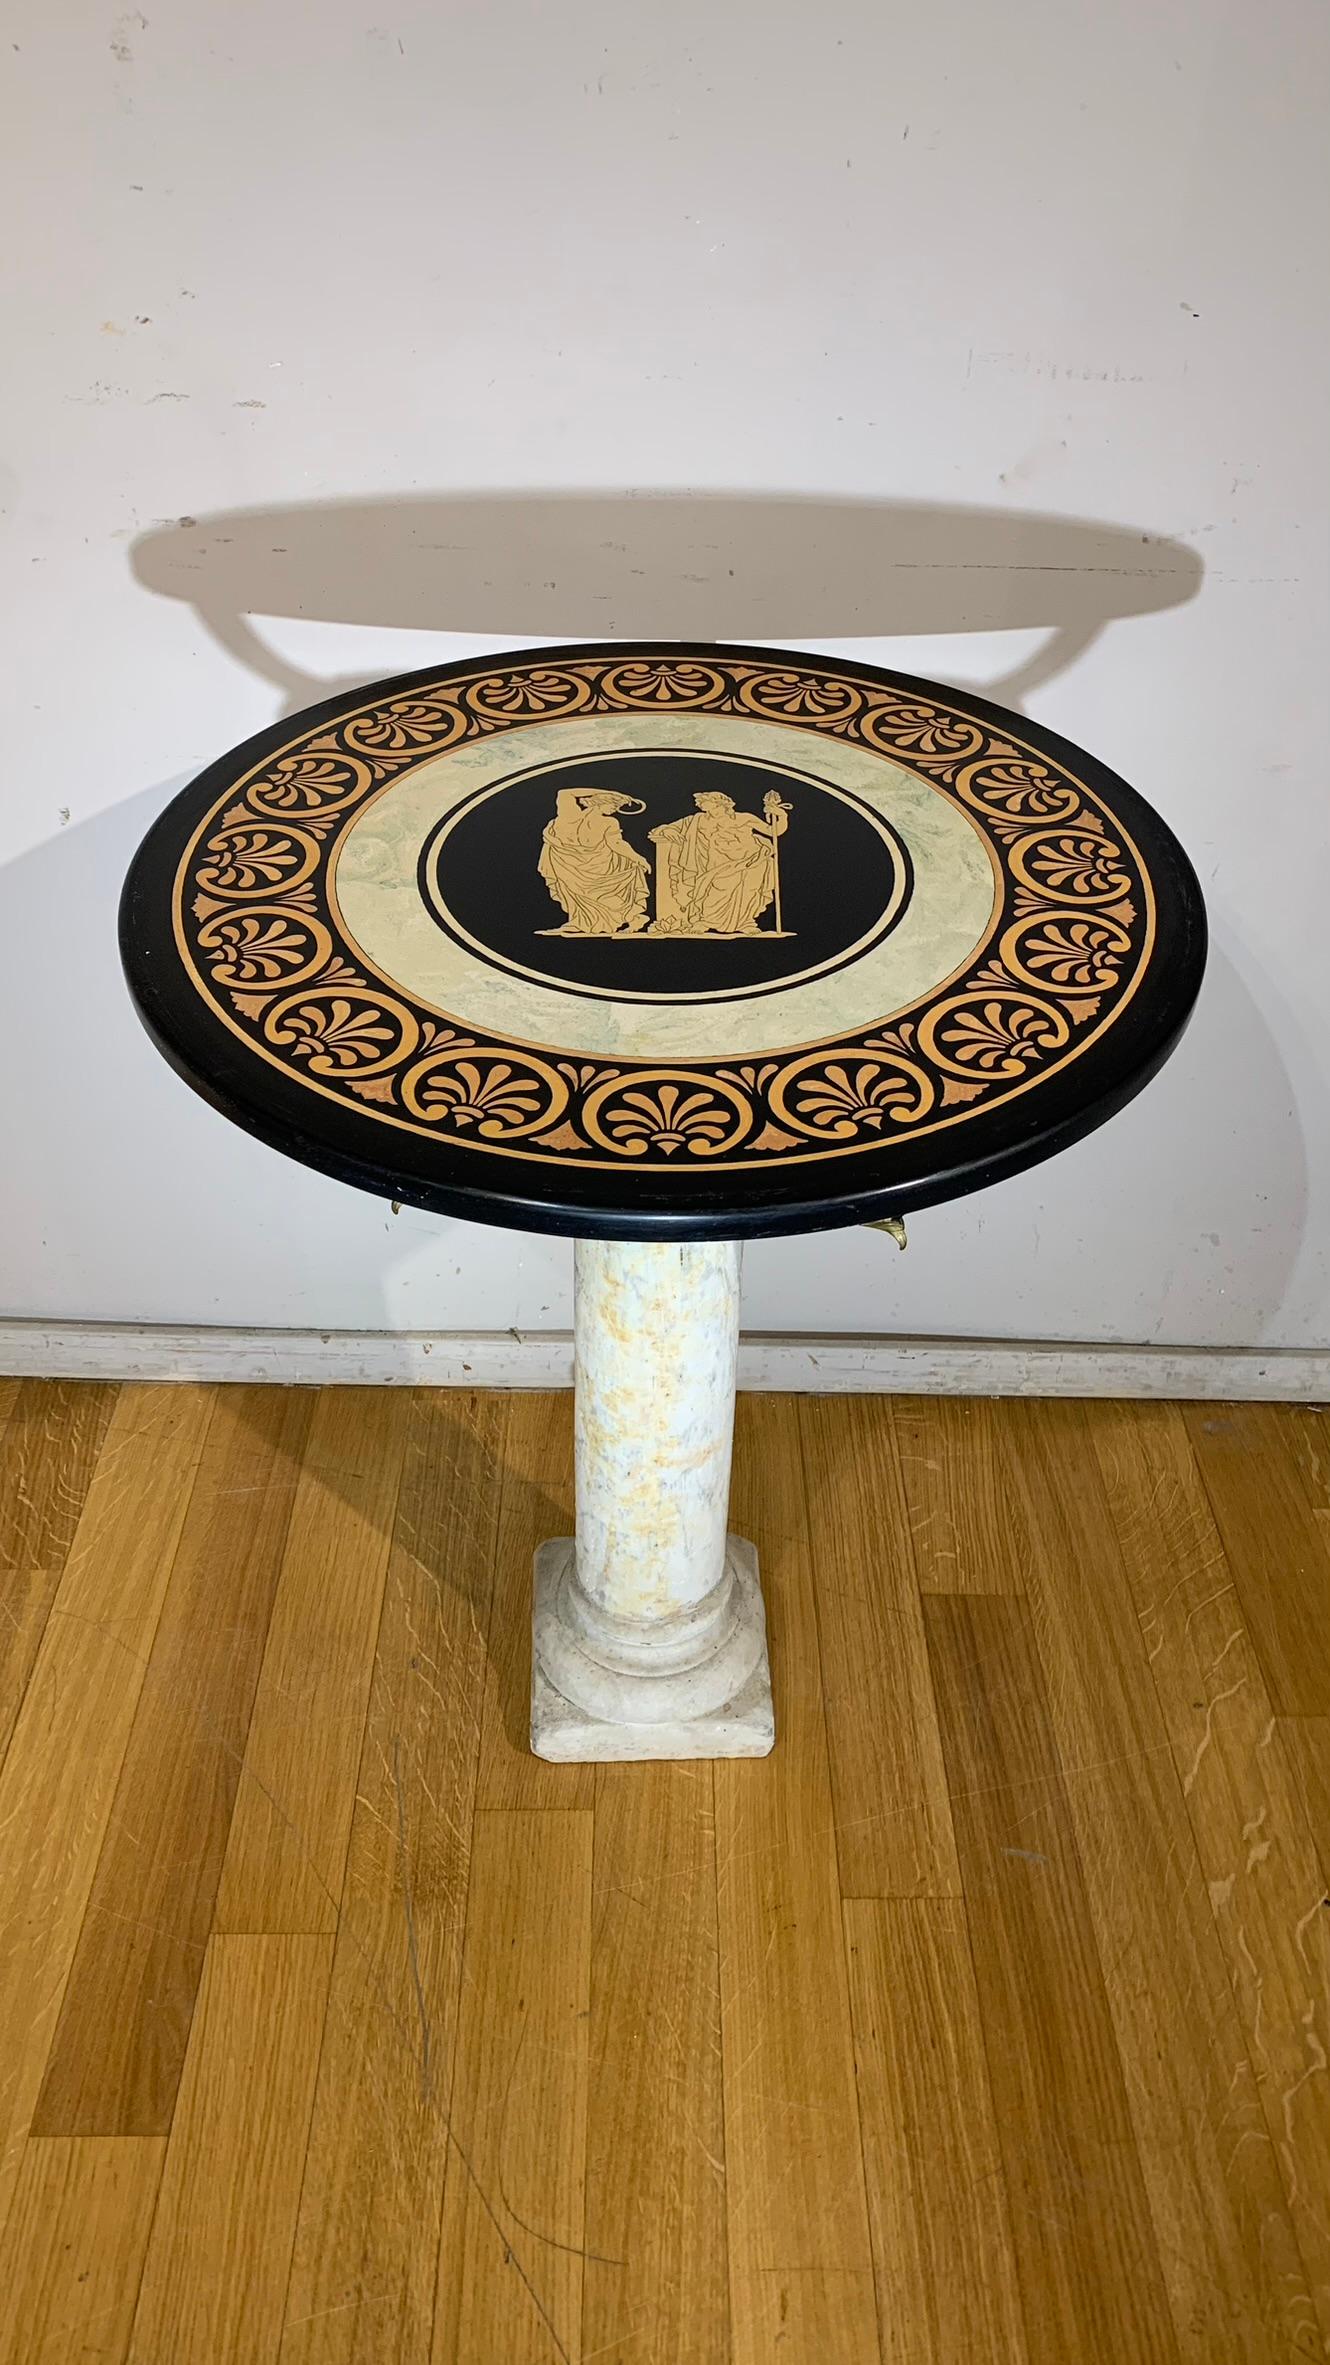 Belle table d'appoint composée d'un fût colonnaire en marbre blanc de Carrare avec des détails en bronze partiellement doré, plateau en scagliola avec des décorations de style pompéien.

MESURES : h cm 74, diamètre cm 60